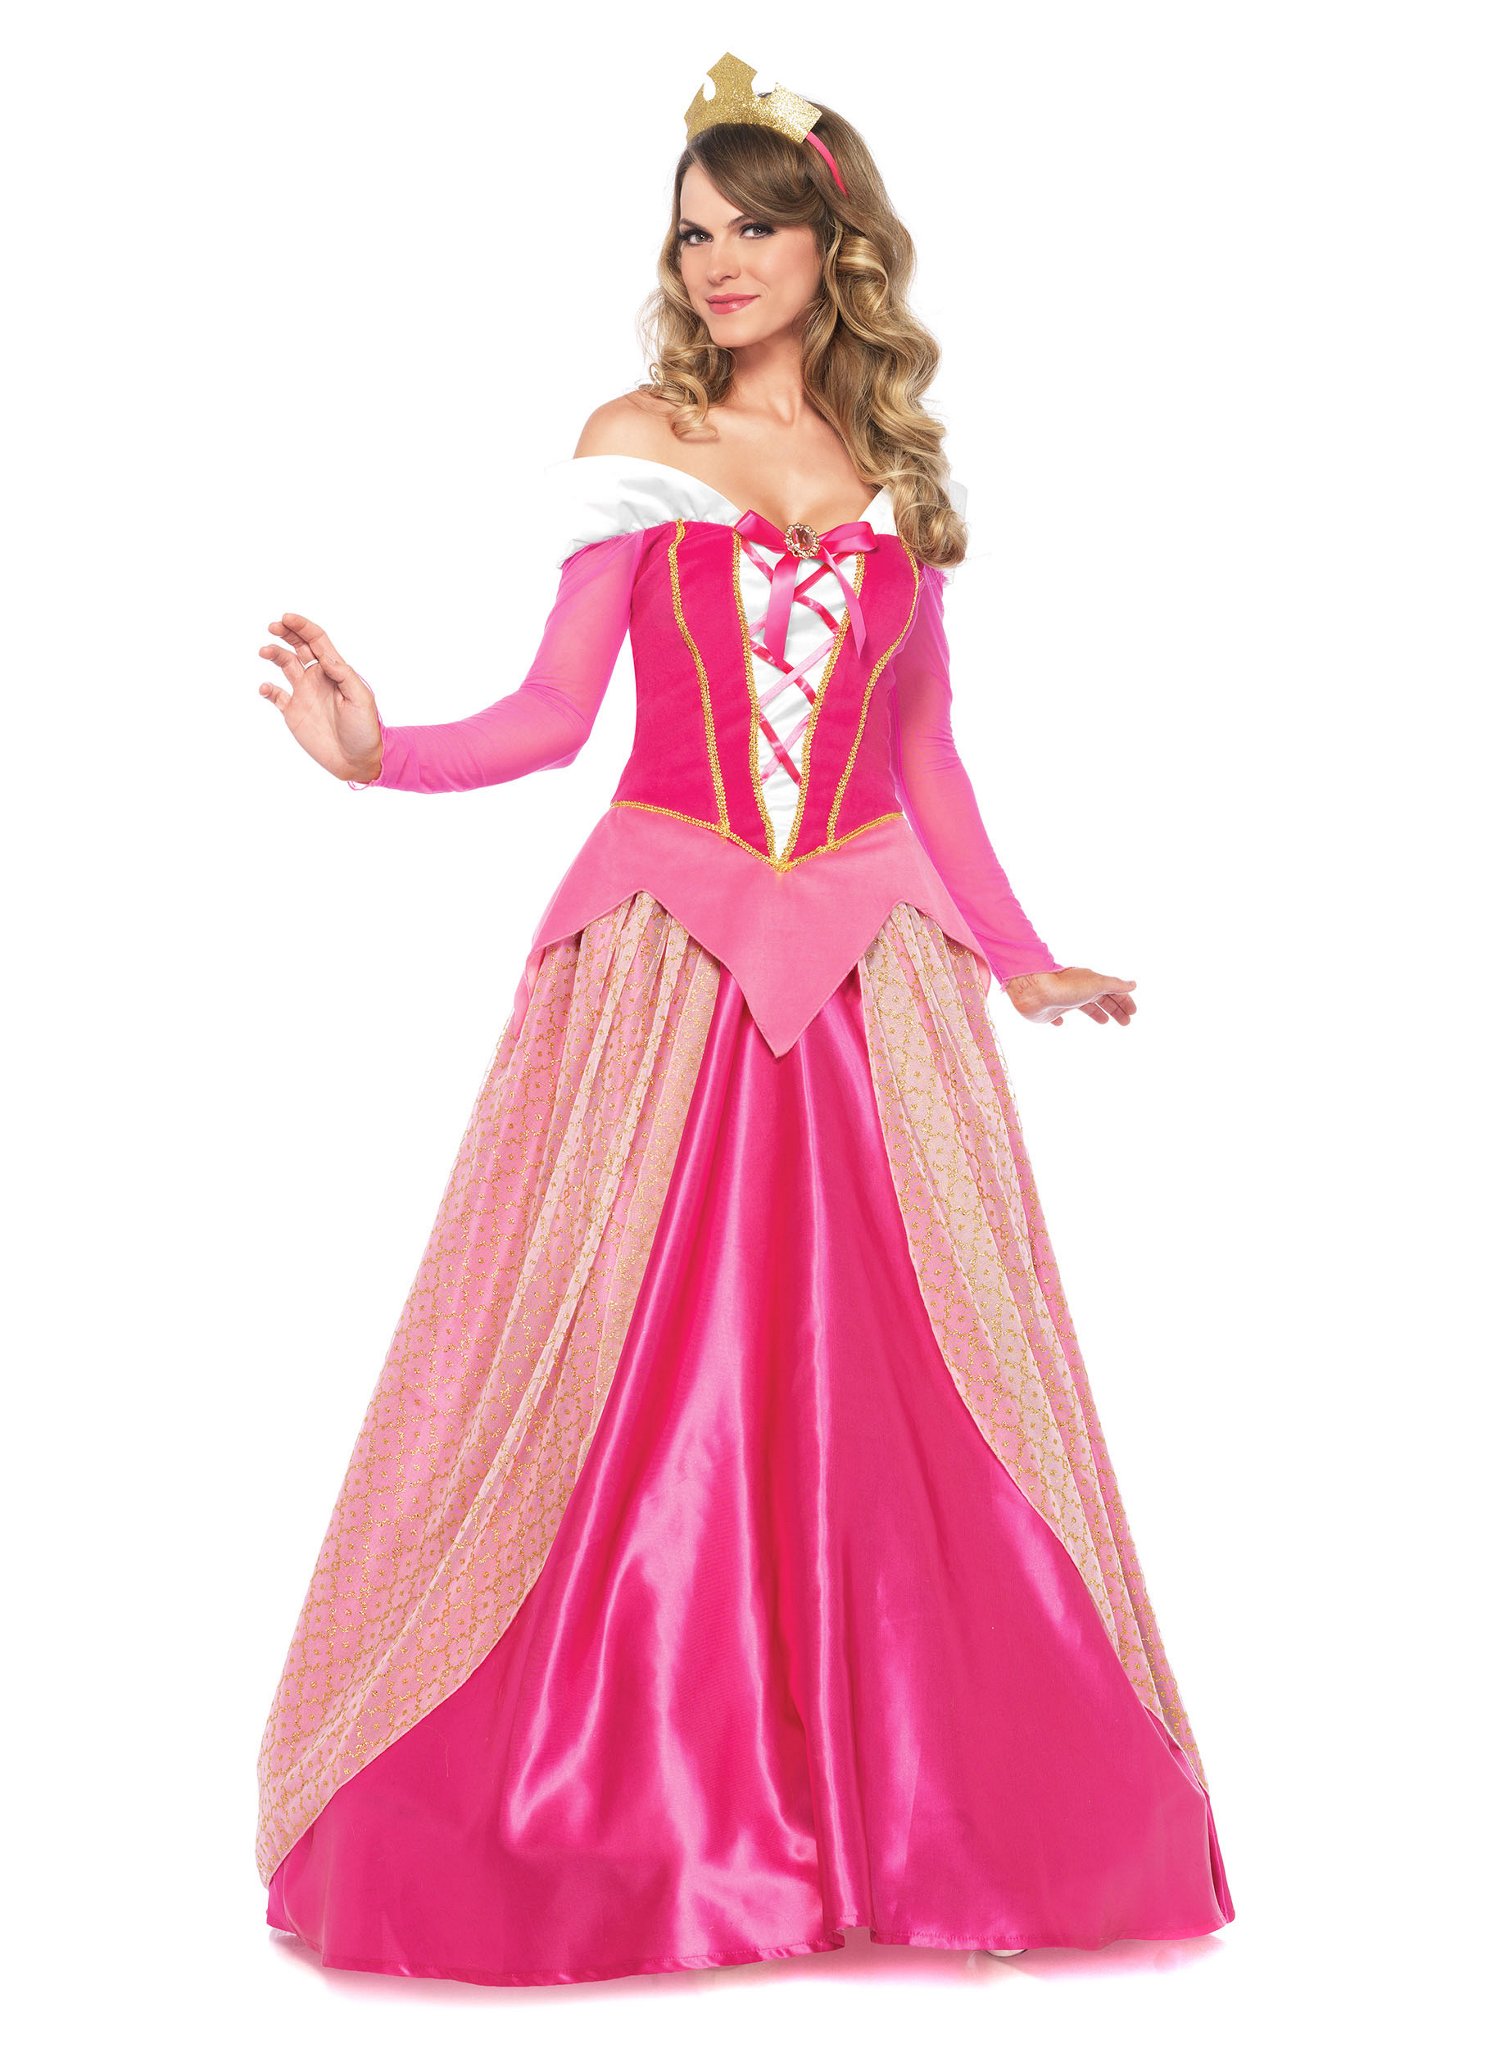 märchen prinzessin kostüm kleid pink mit haarreif tiara | ebay